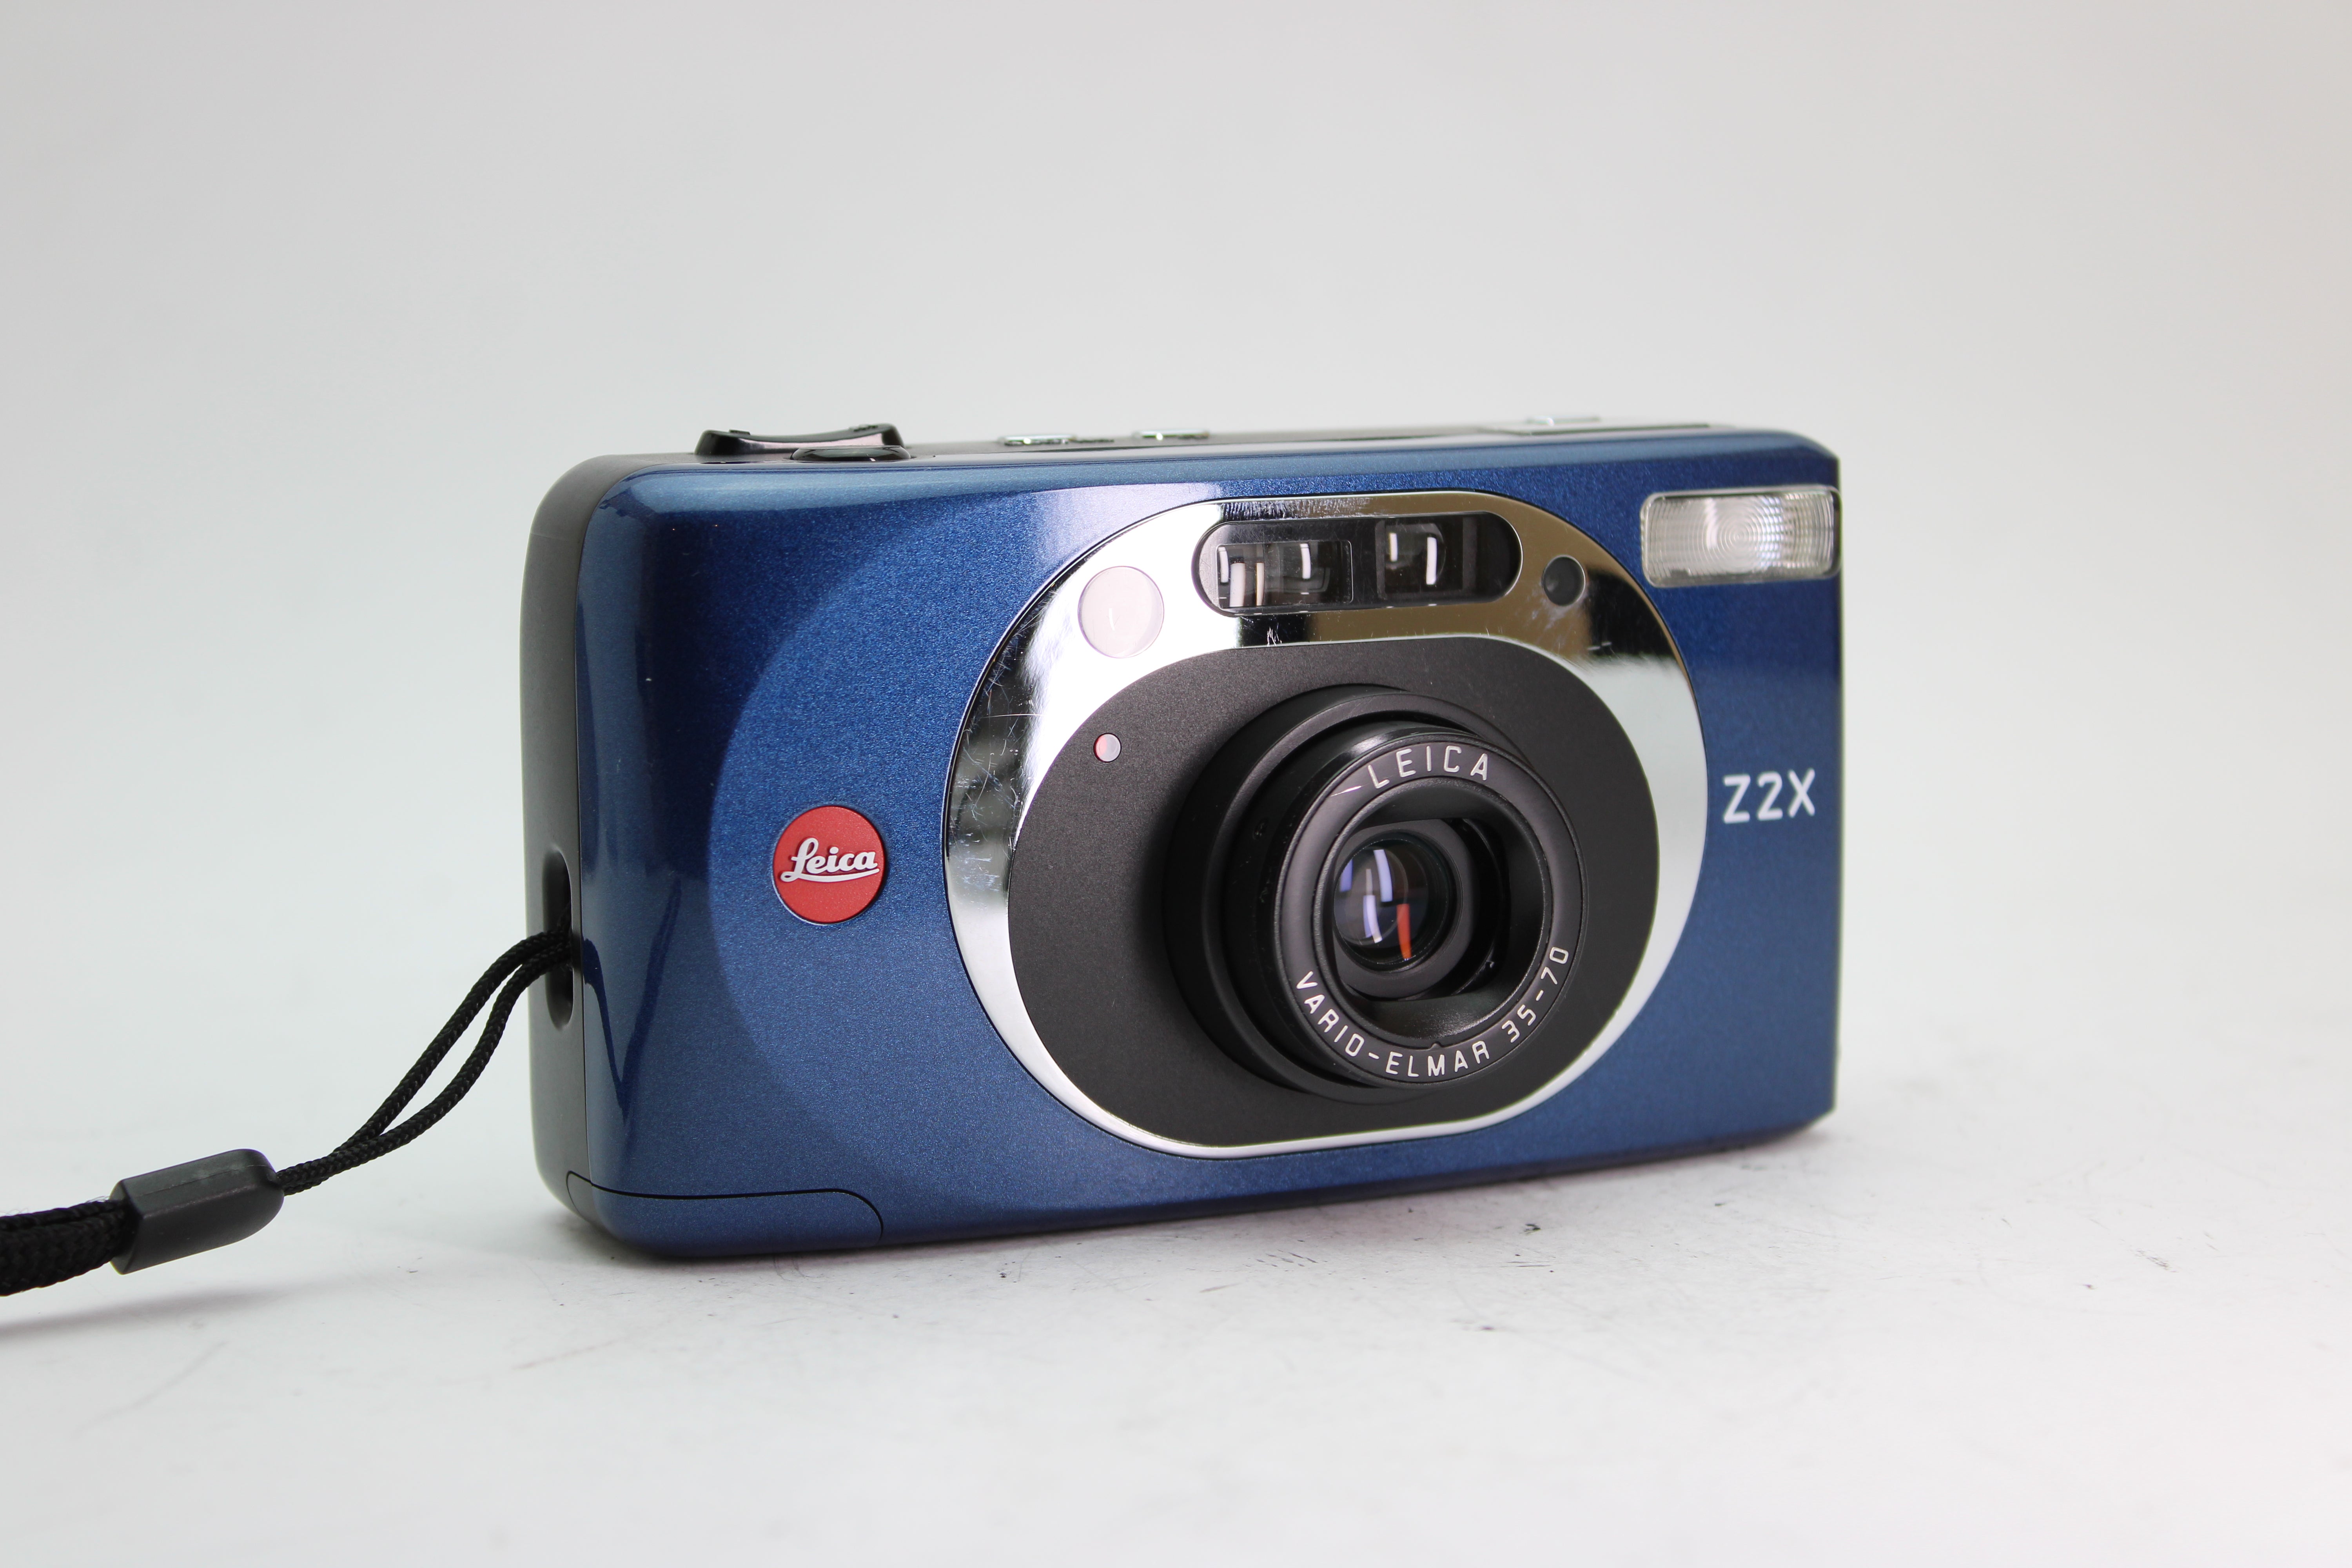 Leica Z2X - Leica